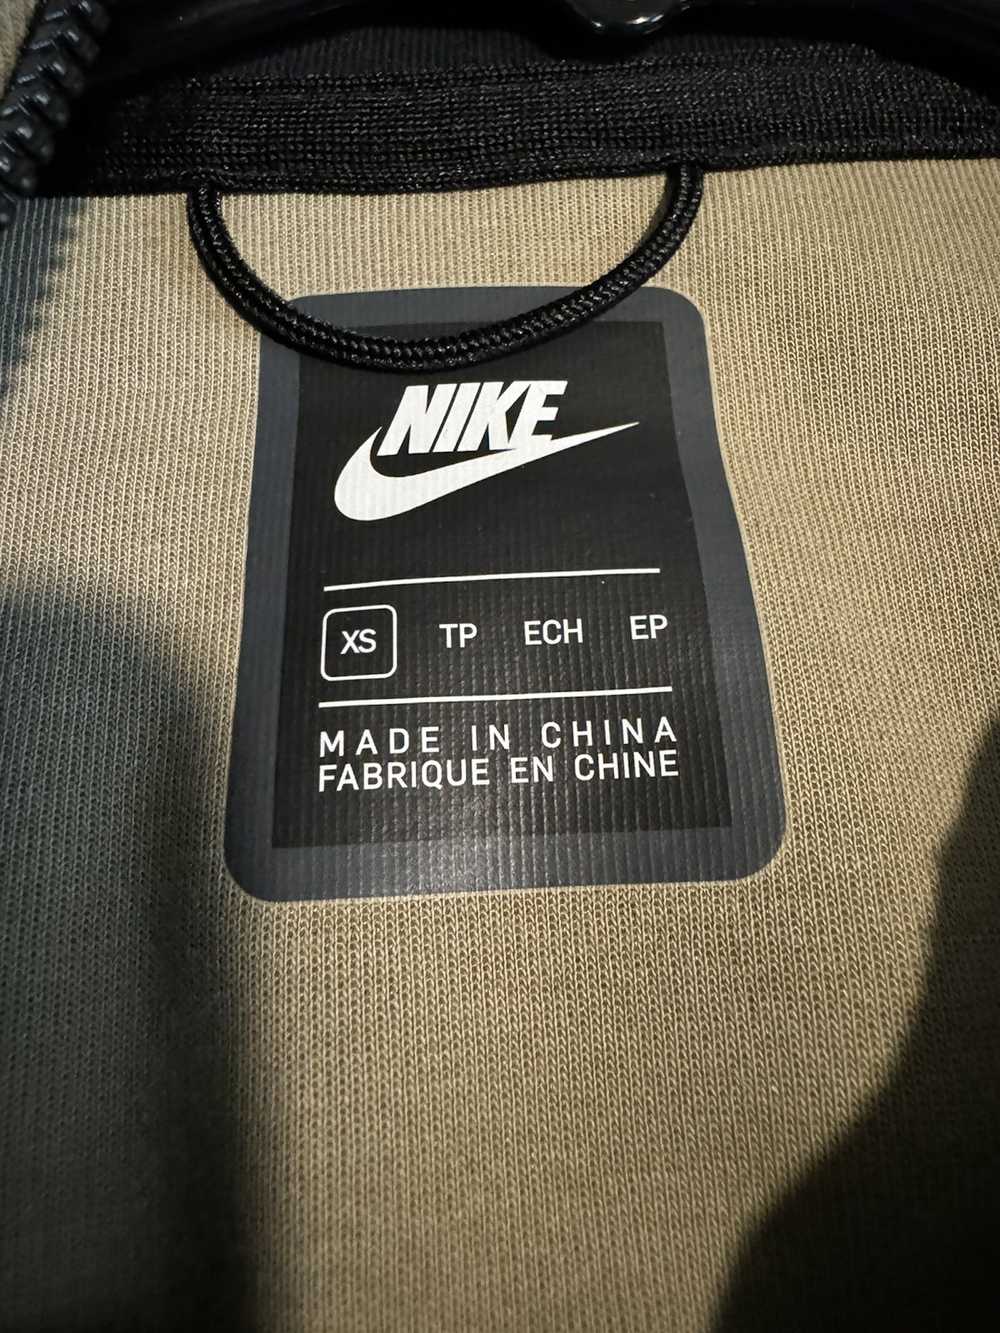 Nike camo nike tech - image 2